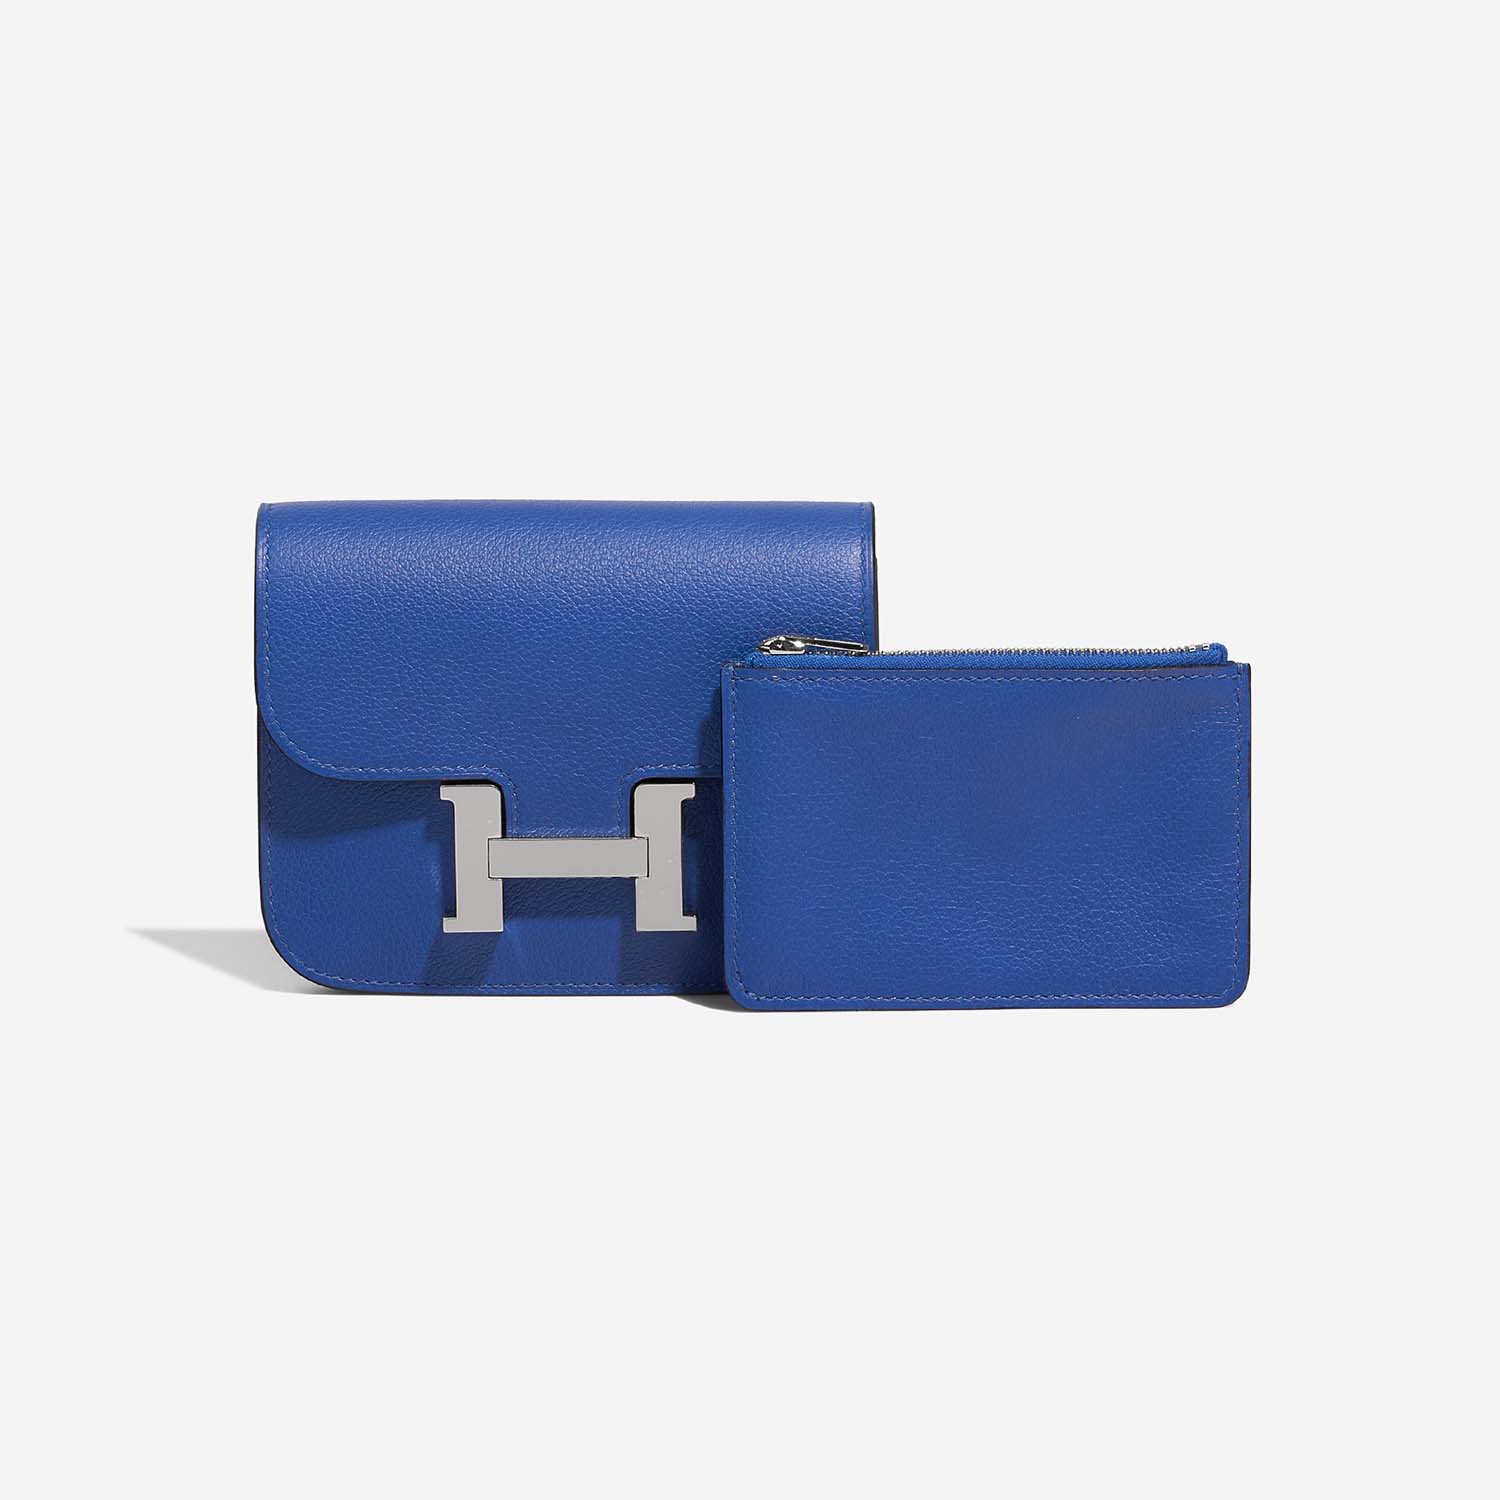 Hermès ConstanceSlimWallet BleuFrance 2F S | Verkaufen Sie Ihre Designertasche auf Saclab.com